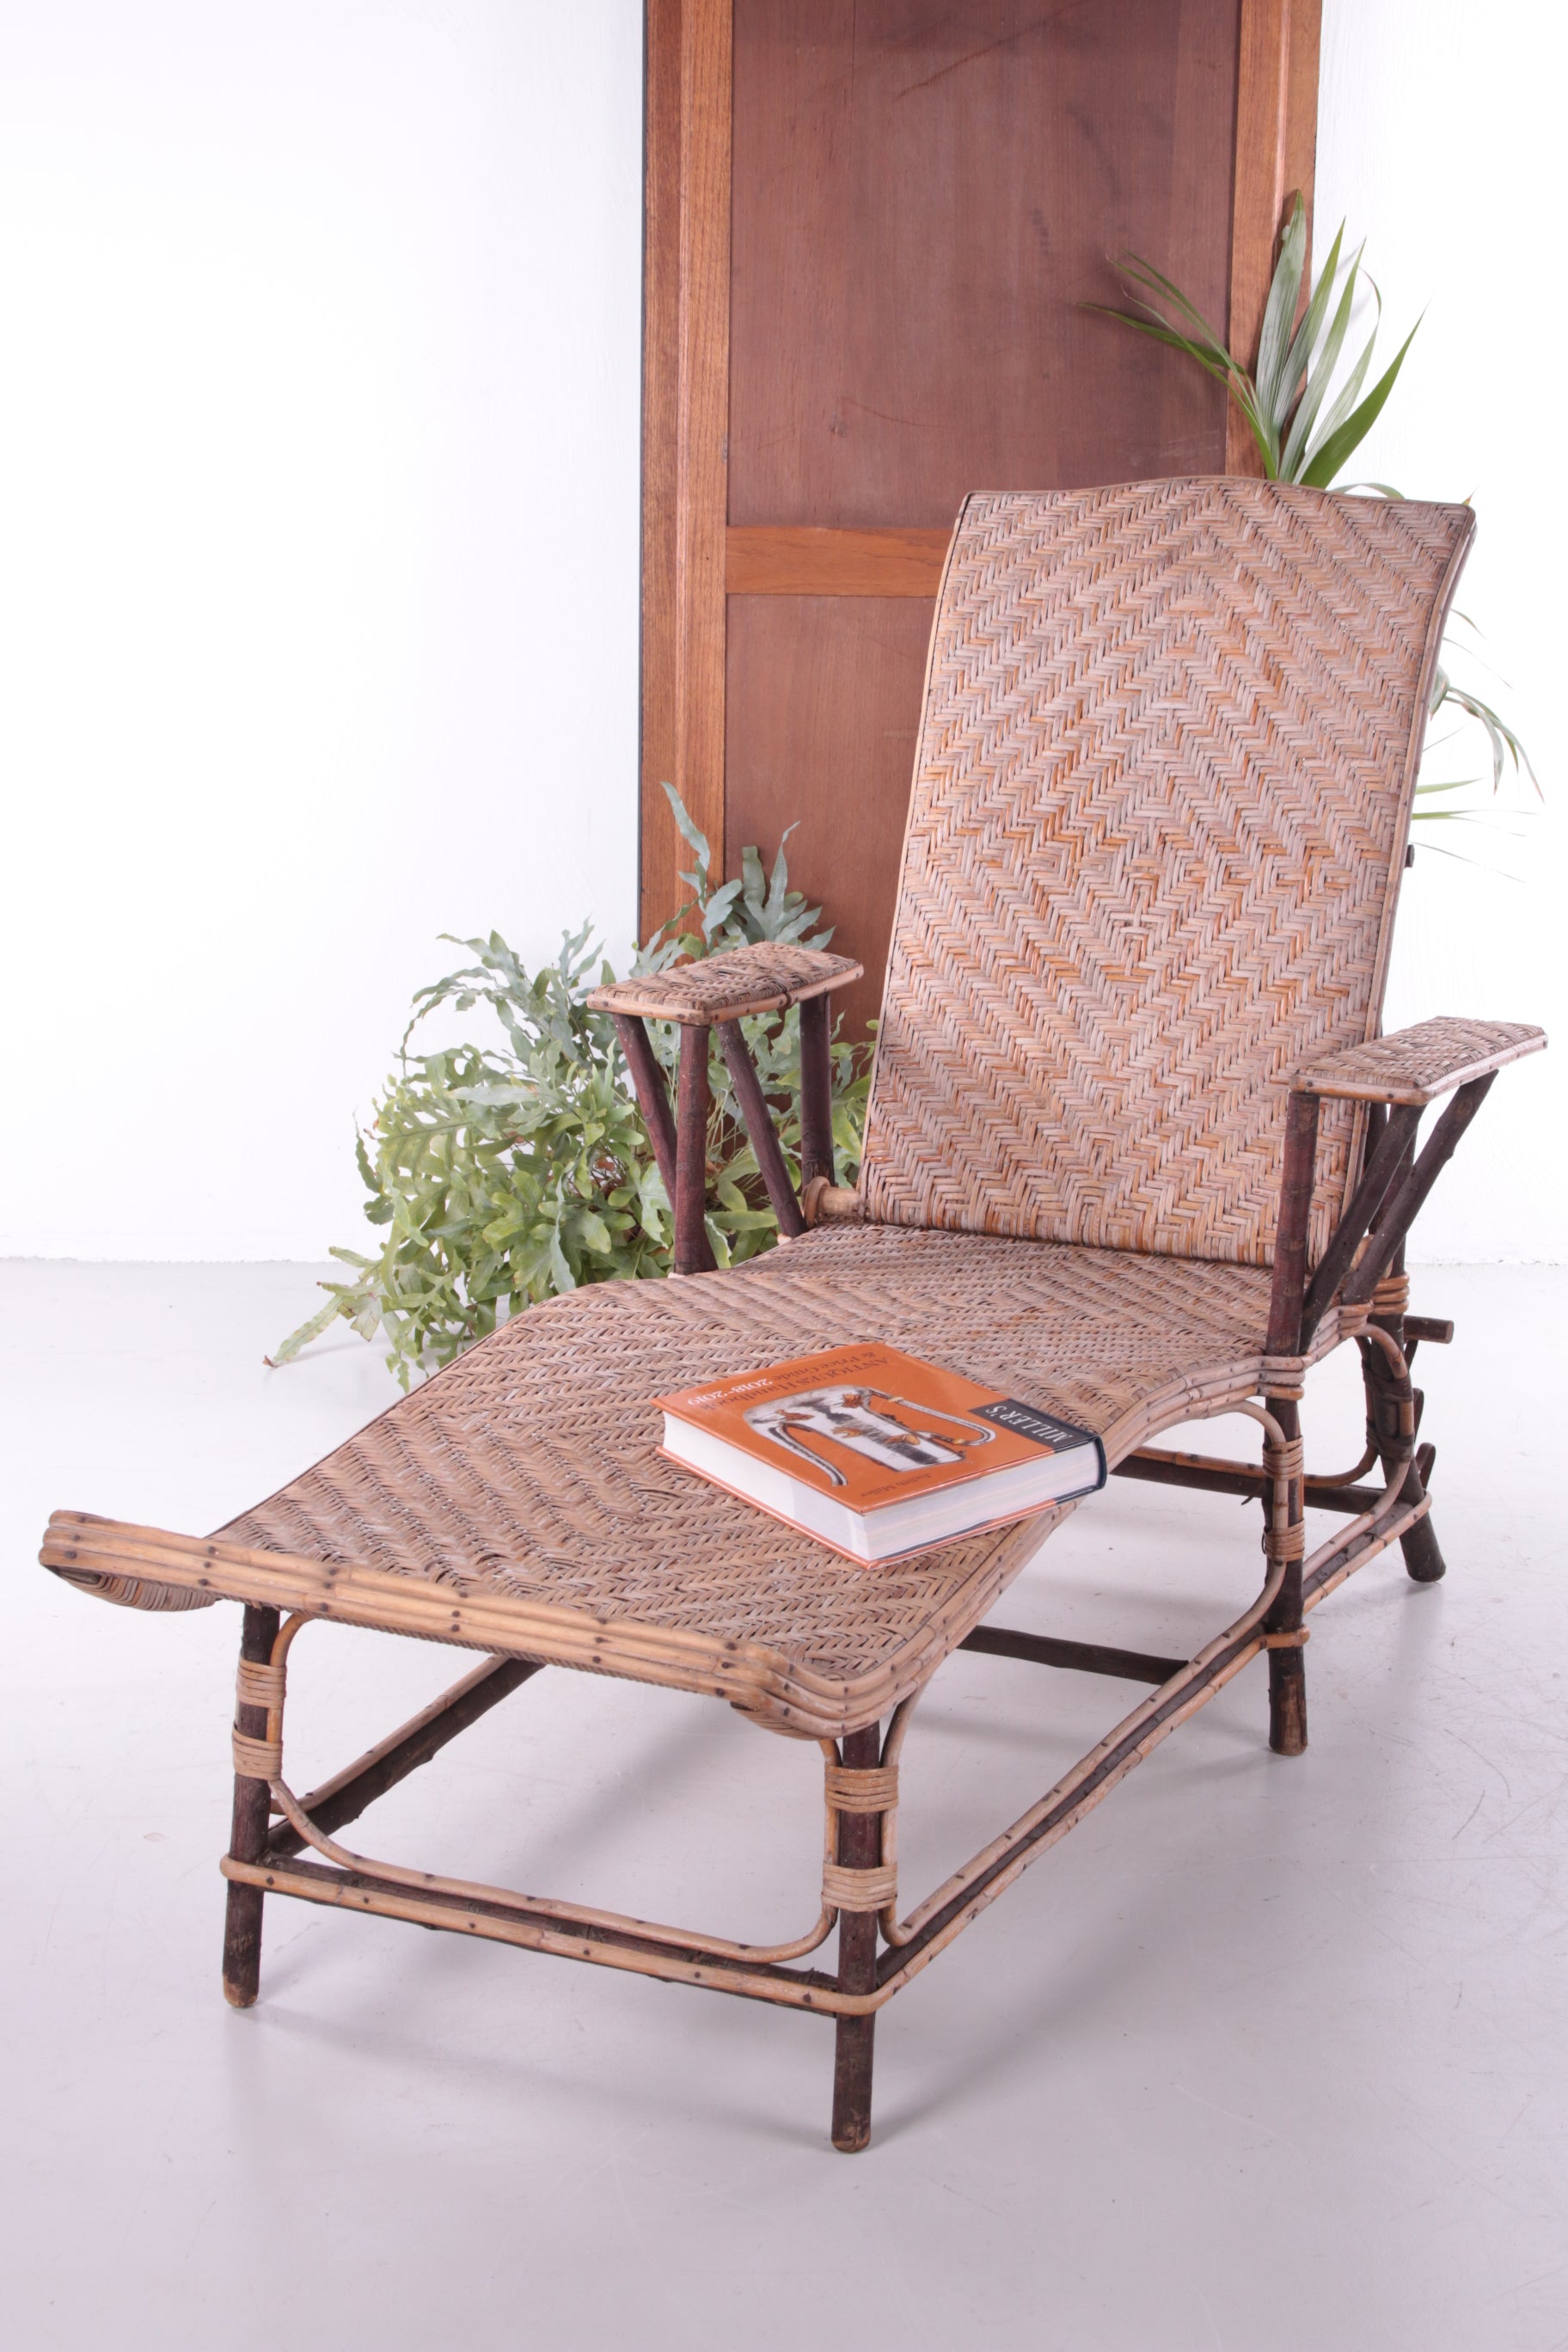 Spaanse bamboe en rieten opklapbare loungestoel uit de jaren 60 sfeerfoto